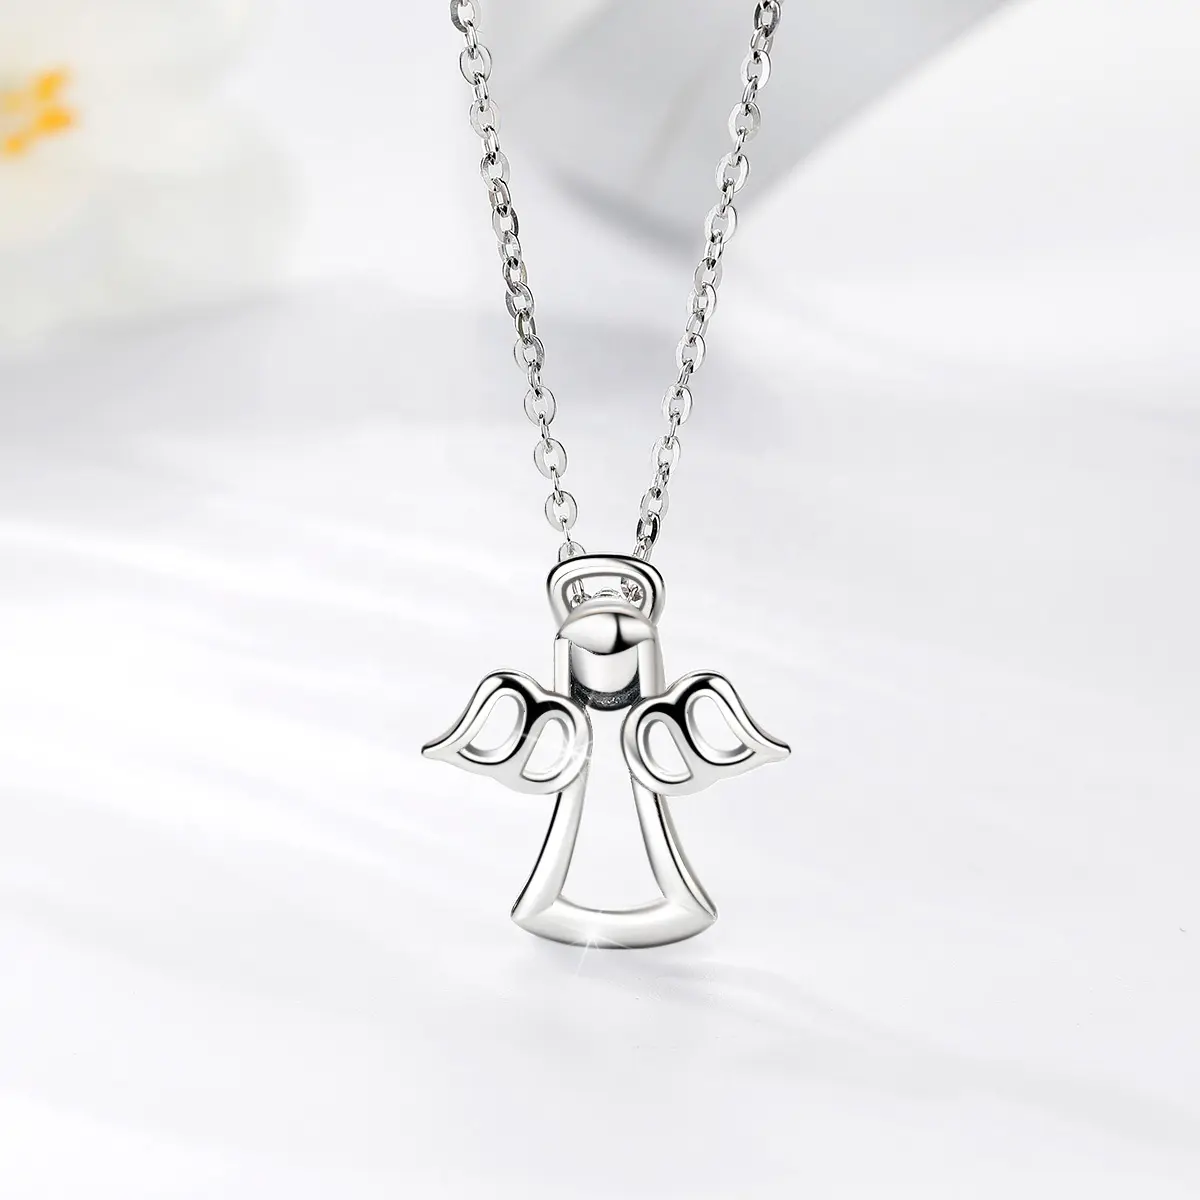 Merryshine Delicato delle donne 925 gioielli in argento sterling ala angeli custodi del pendente della collana